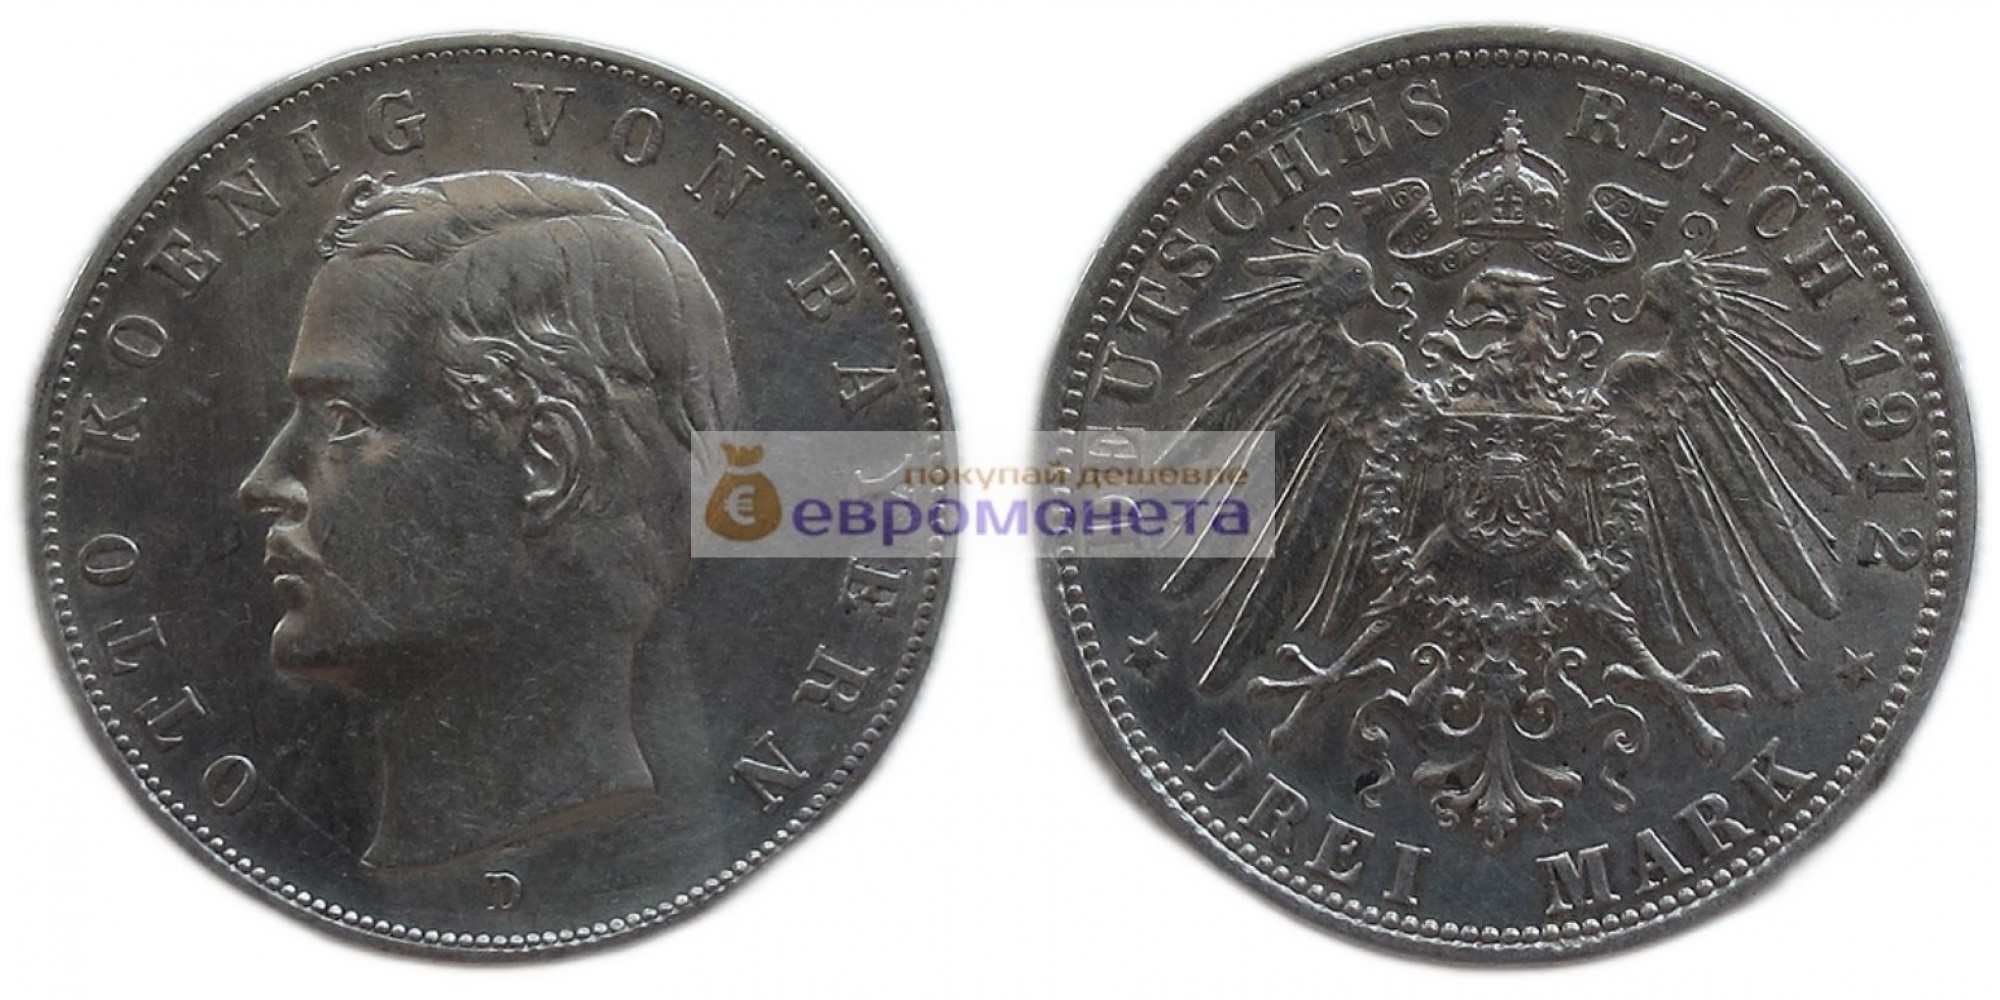 Германская империя Бавария 3 марки 1912 год "D" Отто. Серебро.